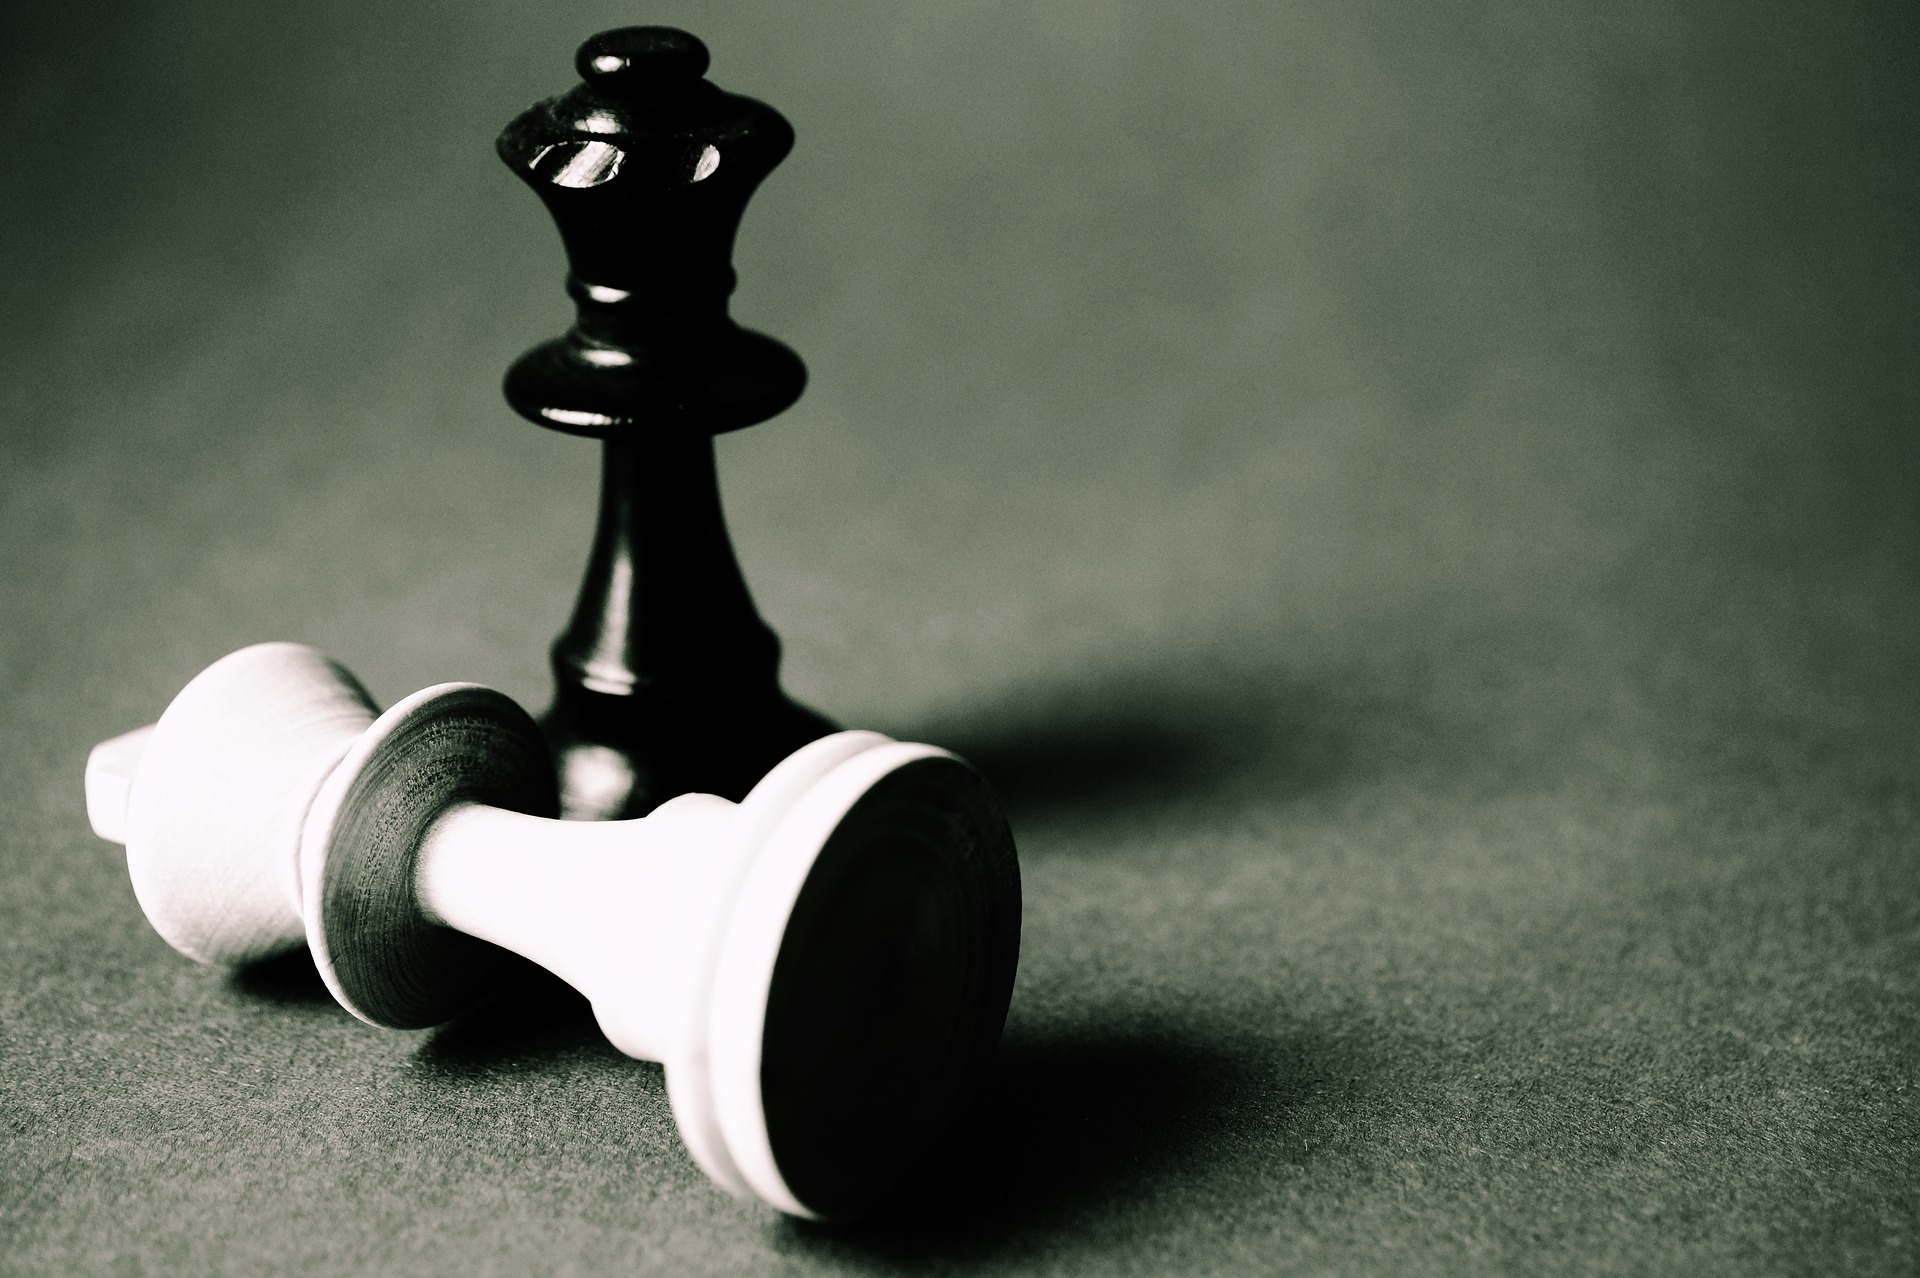 Jaque mate en ajedrez como en la vida puede ser un camino de estrategias